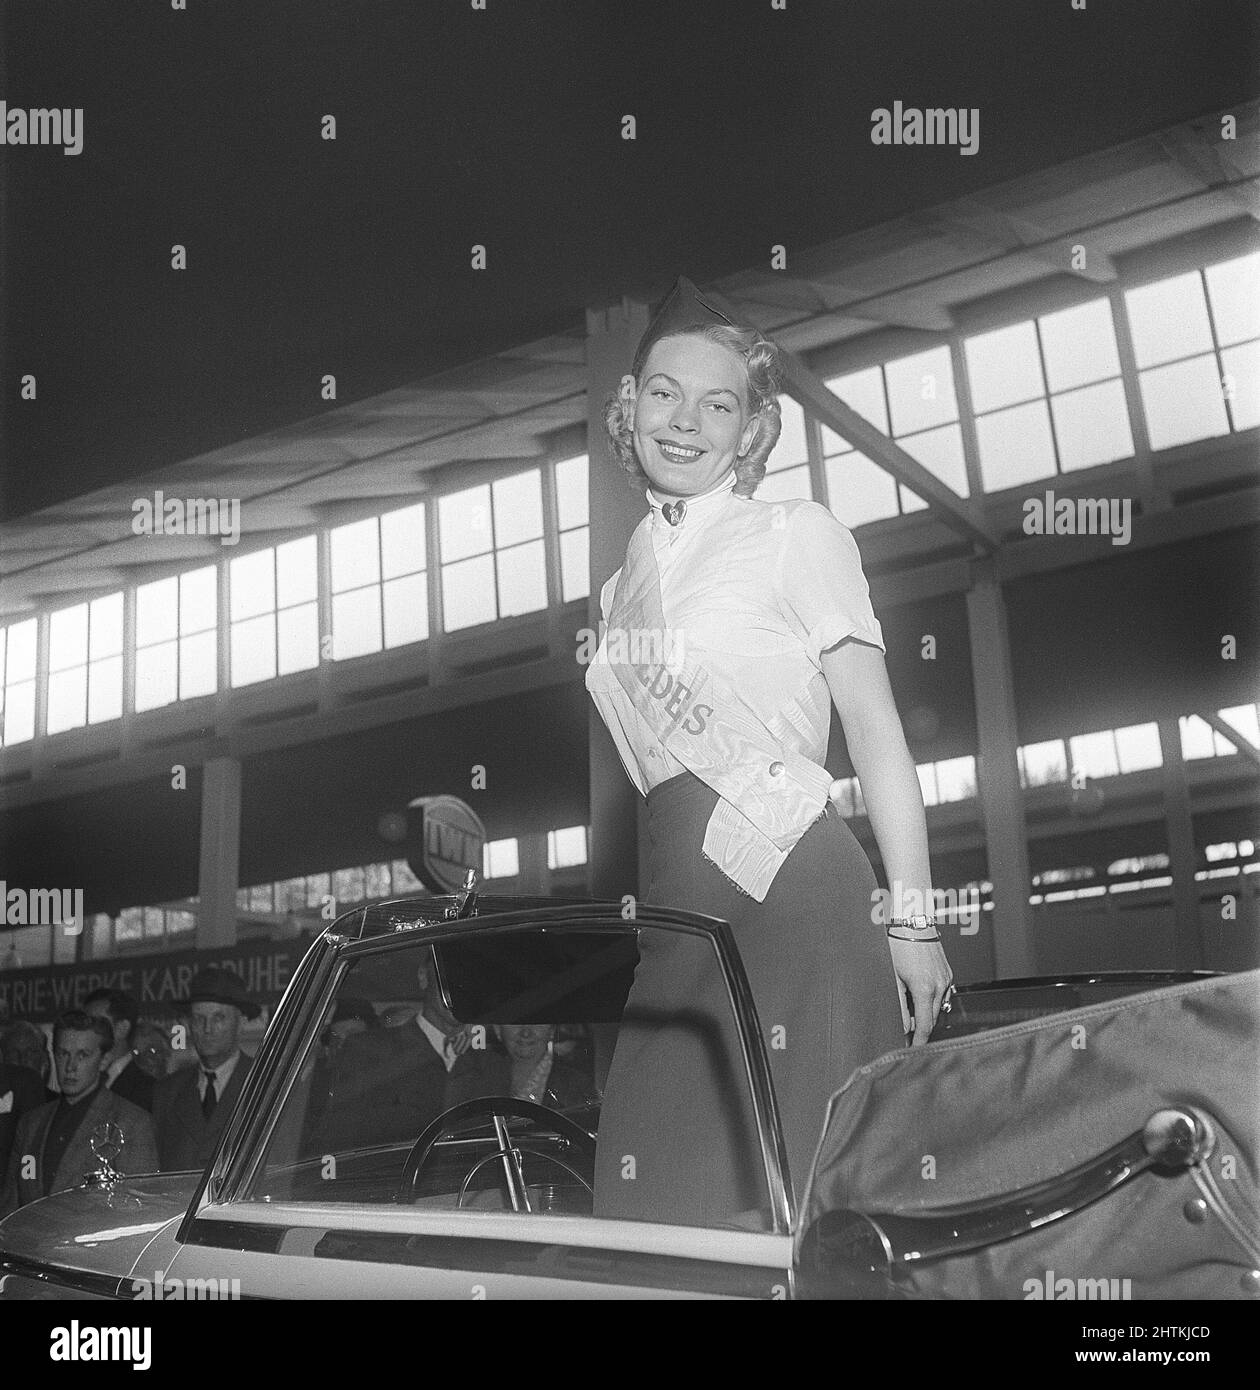 In der 1950s. Eine junge Frau, die im Mercedes-Bereich einer Messe arbeitet, steht in einem Mercedes-Benz Modell 170 S, einem zweisitzigen Cabriolet. Sie hat ein Banner mit dem Namen Mercedes auf sich. Schweden 1951 Kristoffersson Ref. BD38-6 Stockfoto